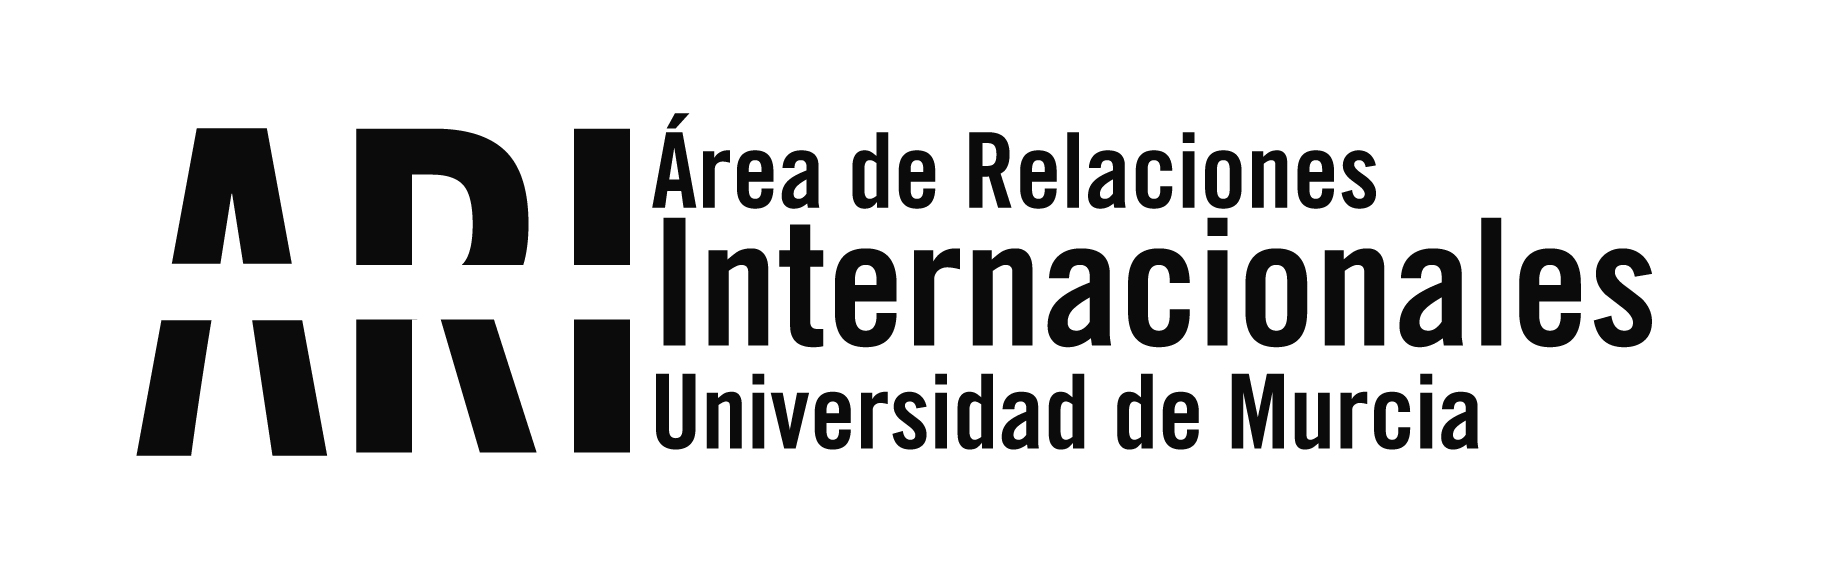 Abierta la convocatoria del programa de Intercambio con Latinoamérica ILA para el curso 2019-20 - Área de Relaciones Internacionales